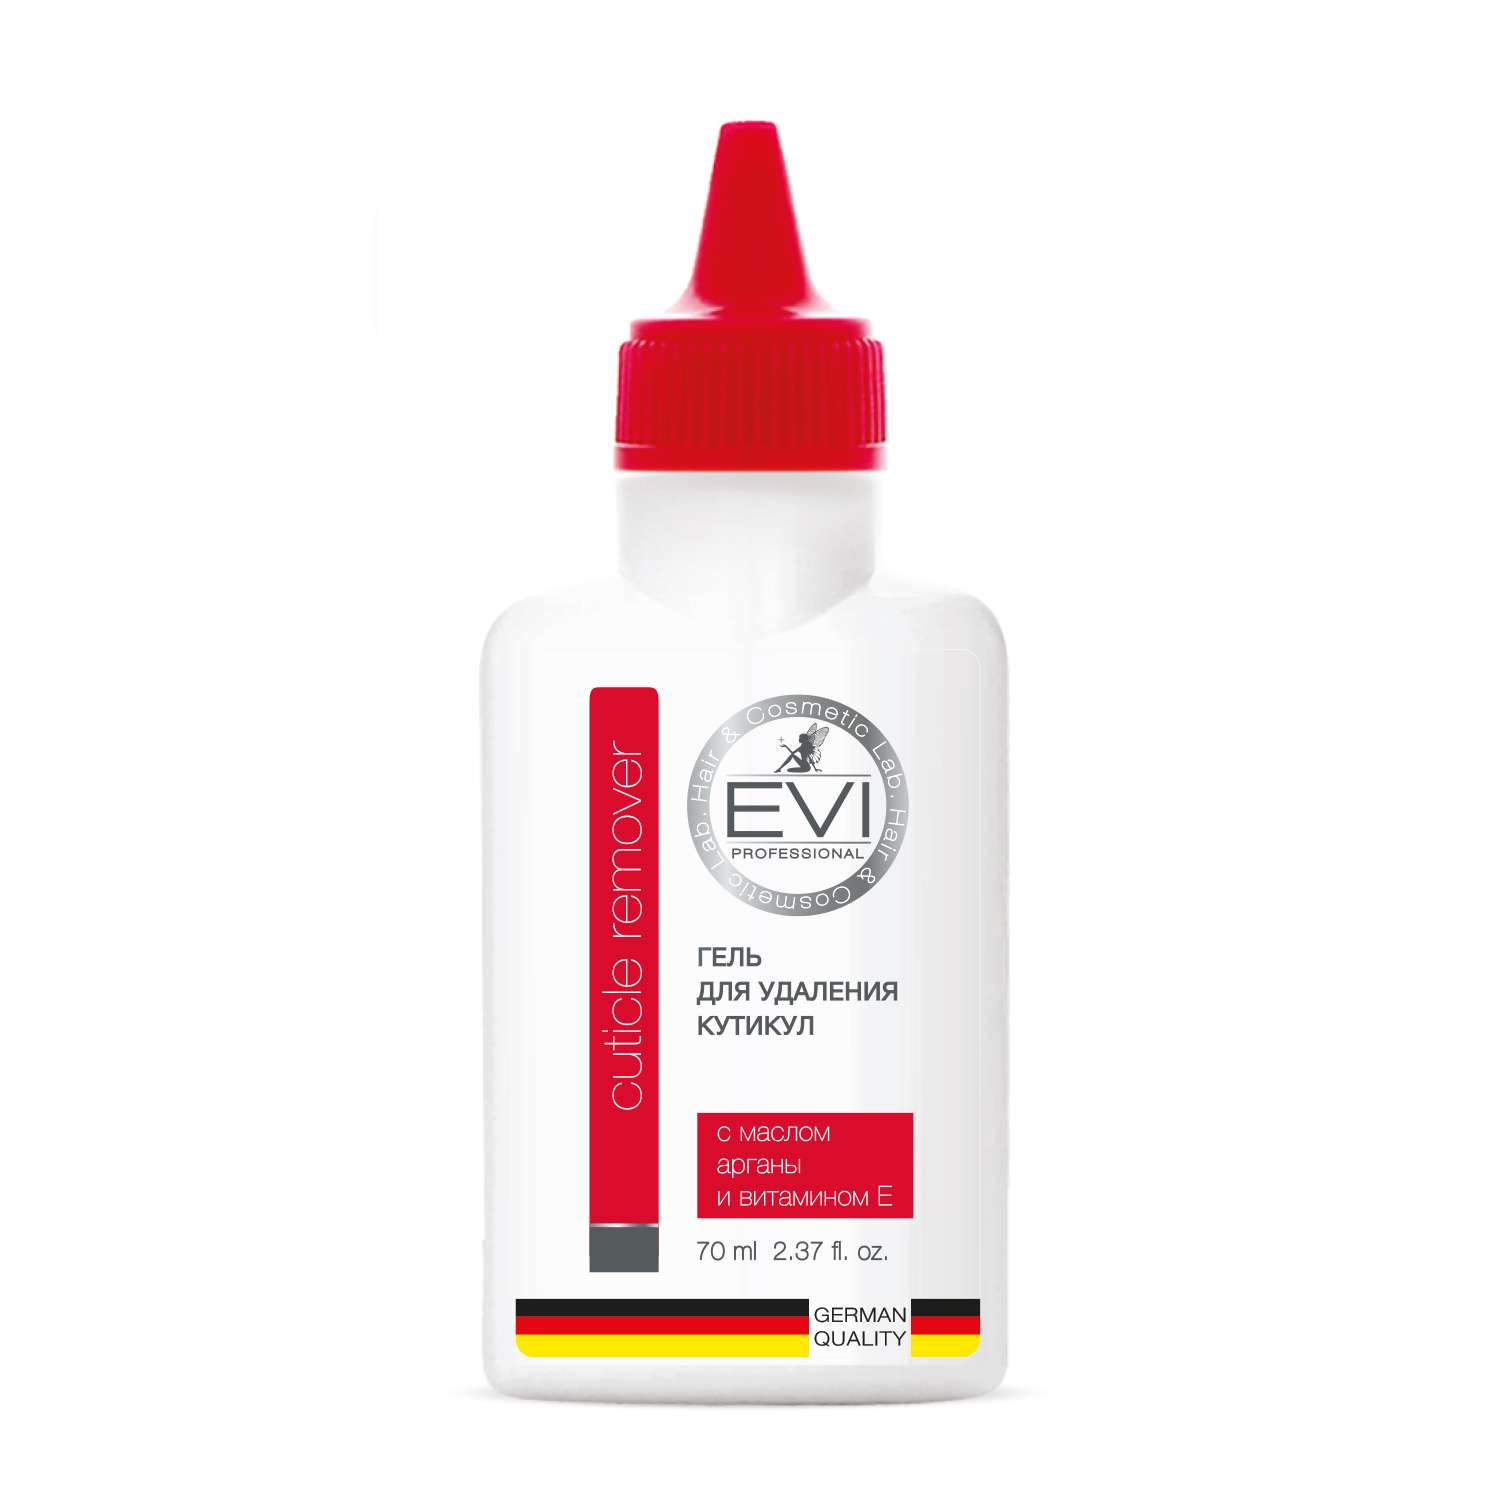 Гель Evi Professional Для удаления кутикулы с маслом арганы и витамином Е - фото 1